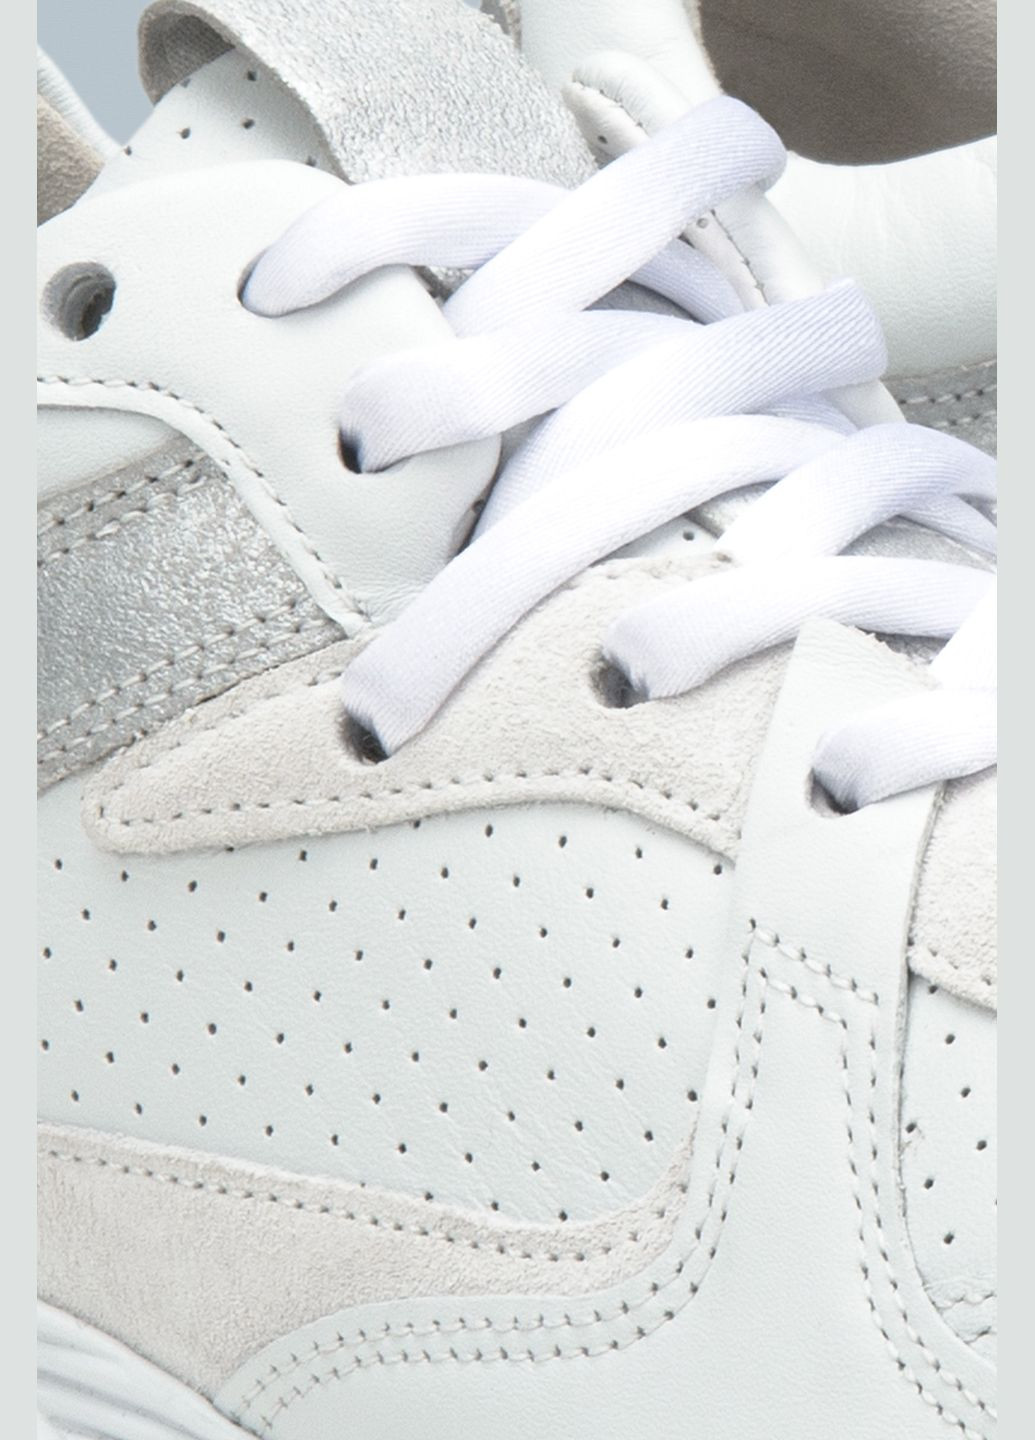 Белые демисезонные кроссовки, цвет белый Estro